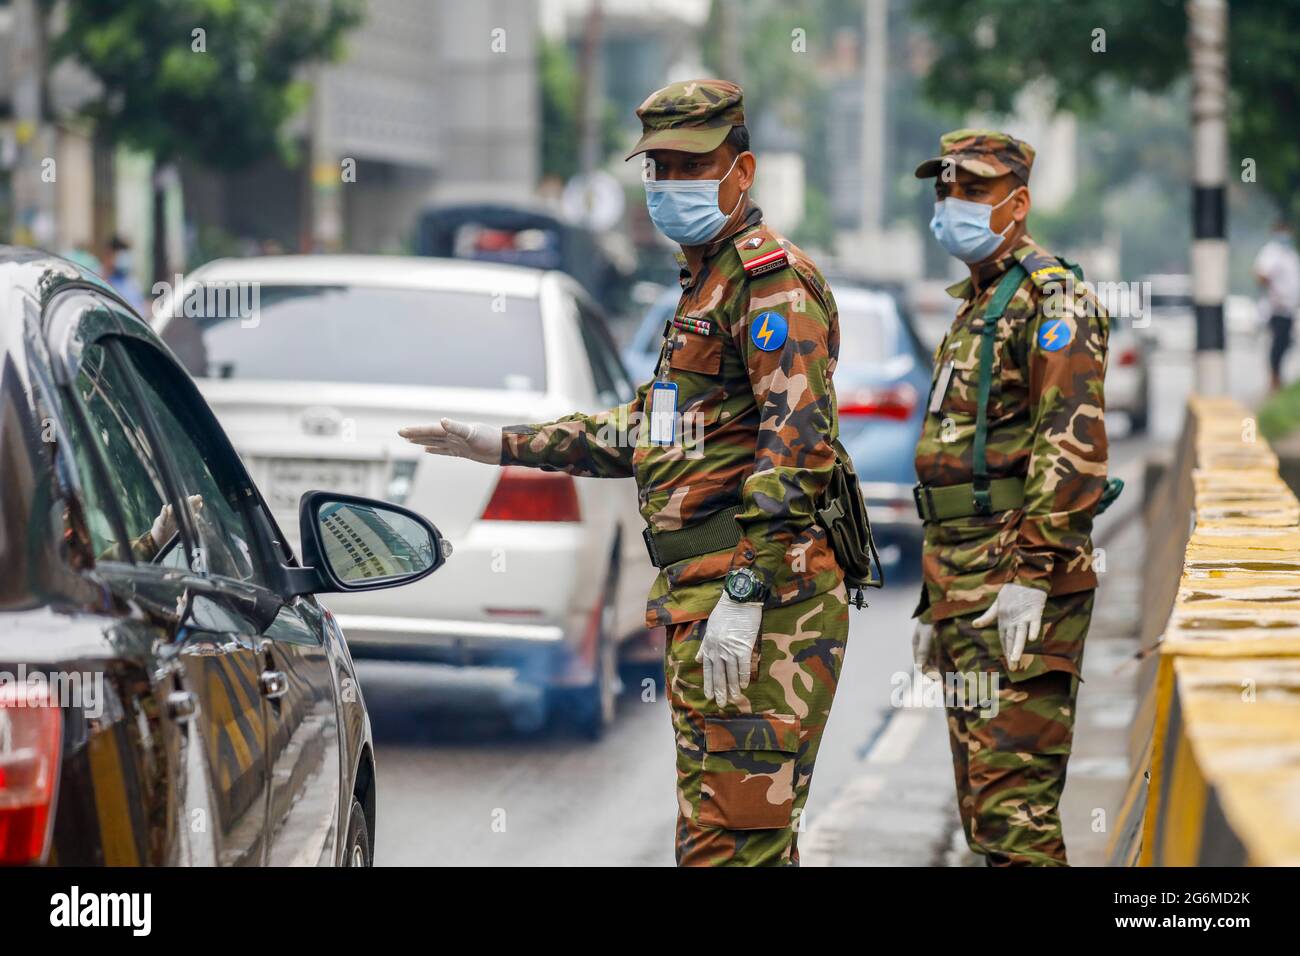 Le personnel de l'armée limite les déplacements de la population pendant le confinement strict à l'échelle nationale pour enrayer la pandémie du coronavirus, à Dhaka, au Bangladesh, le 7 juillet 2021. Banque D'Images